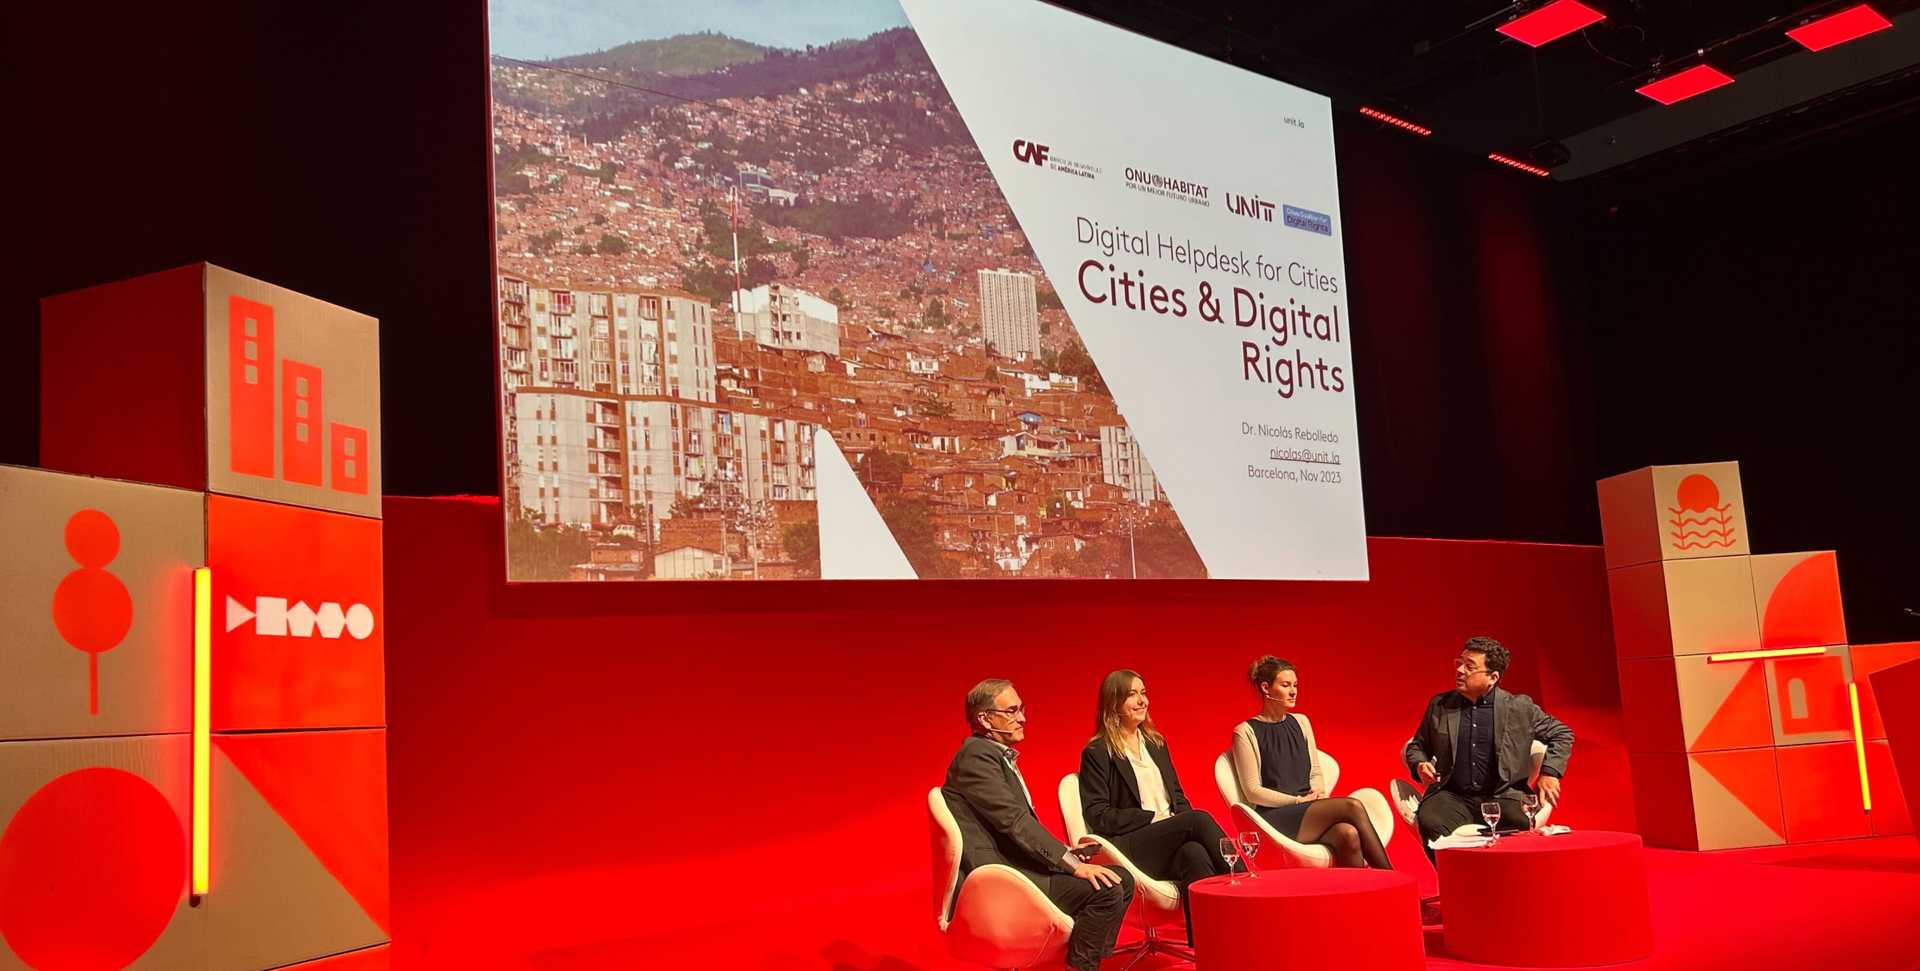 Ciudades y Derechos Digitales: Una plataforma global por la transformación digital con enfoque de derechos